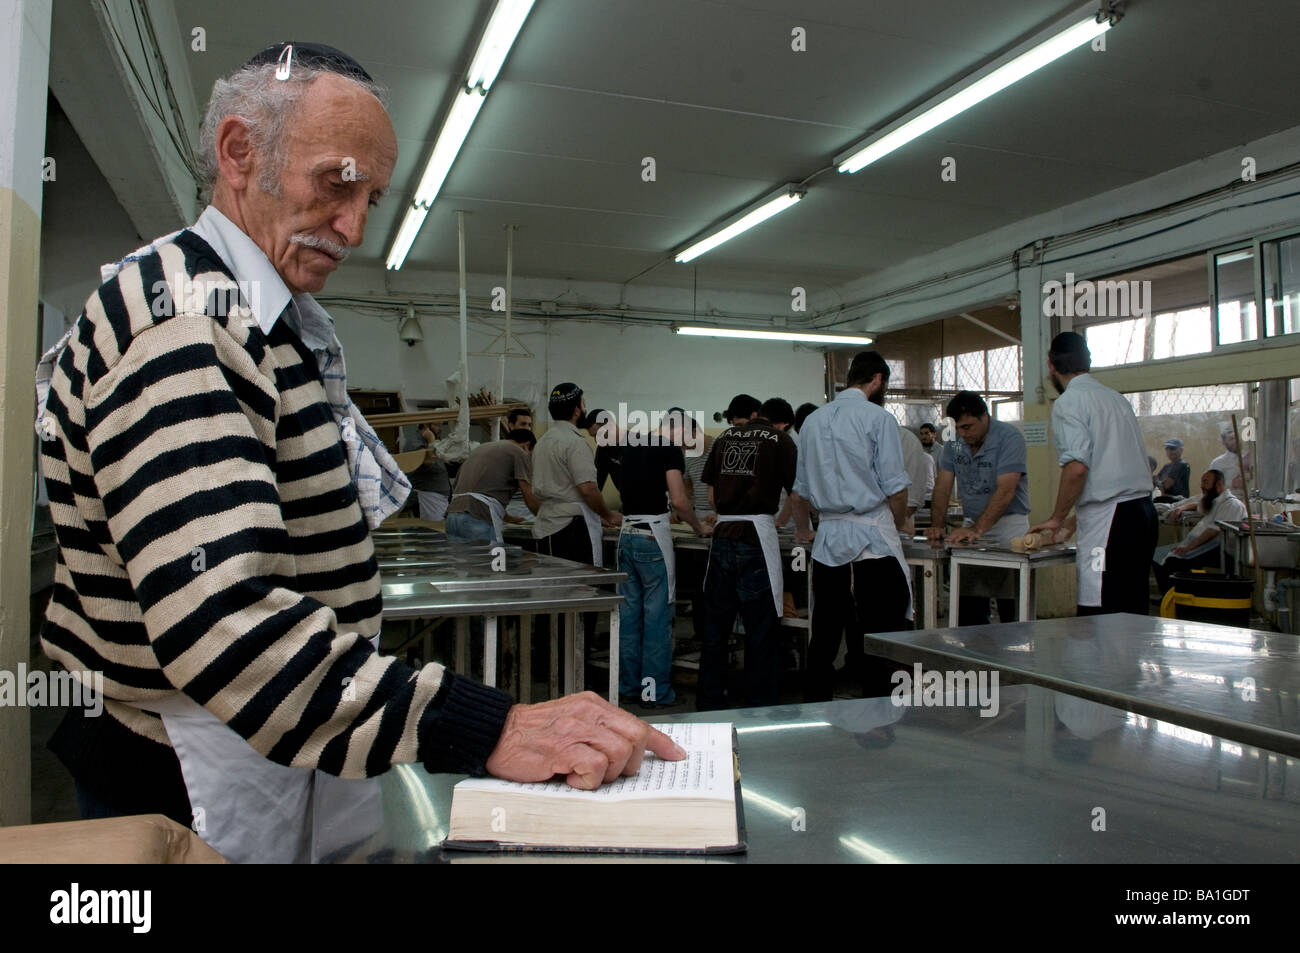 Ein religiöser jude betet, während andere Juden Matzot traditionell vorbereiten Ungesäuertes Brot, das am Passahfest in der Kfar Chabad Bäckerei gegessen wird Zentralisraelisch Stockfoto